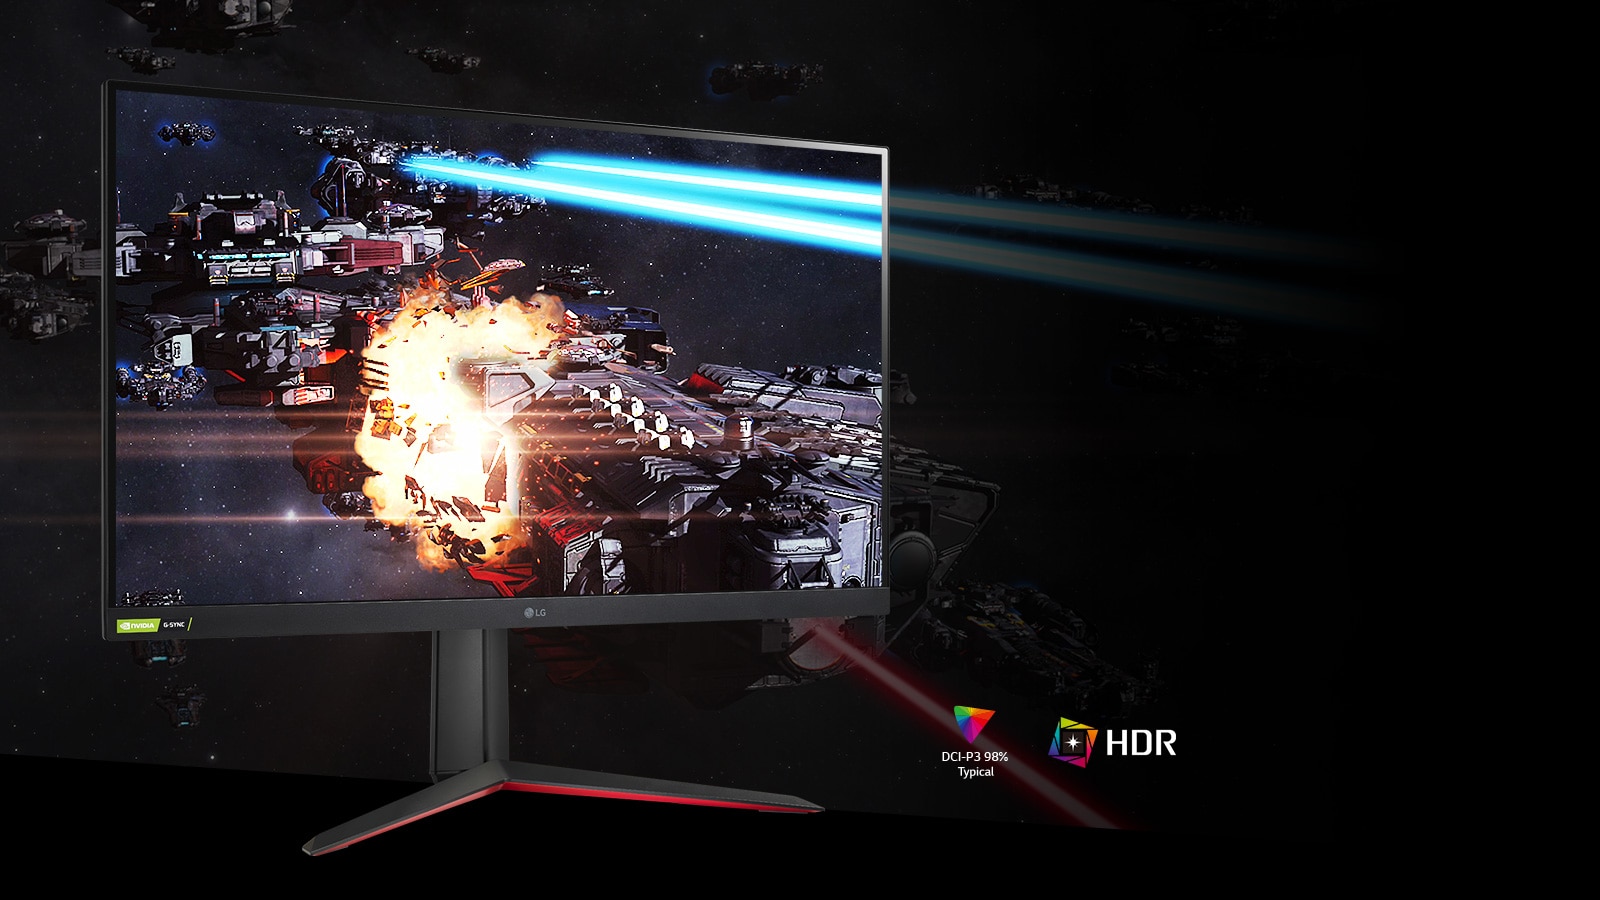 De gamingscène in rijke kleuren en contrast op de monitor die HDR10 ondersteunt met DCI-P3 98% (typ.).